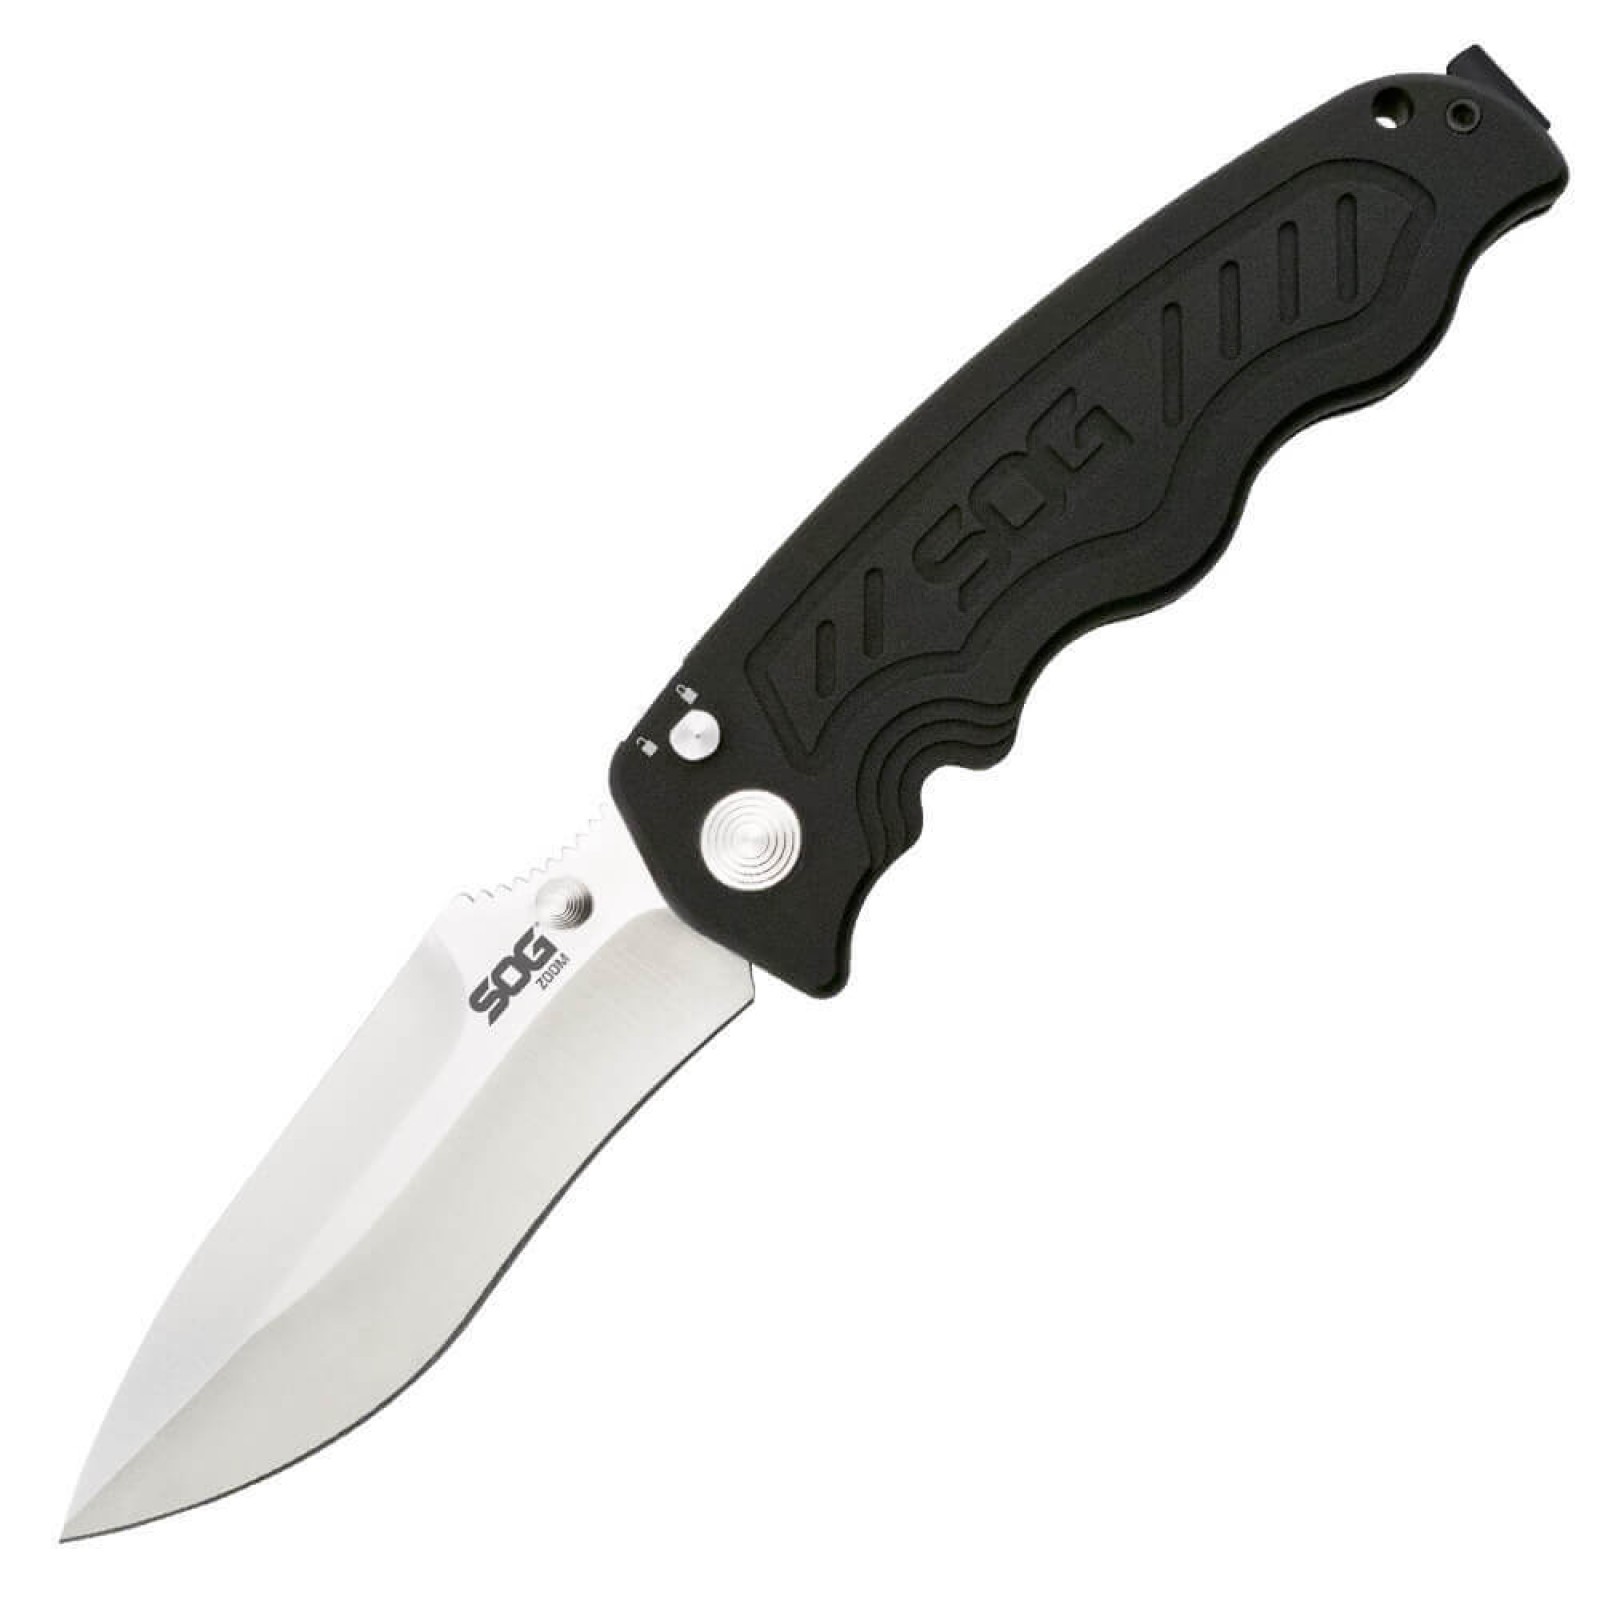 Складной нож Zoom - SOG ZM1011, сталь лезвия AUS-8 Satin Polished, рукоять алюминий, чёрный - фото 2